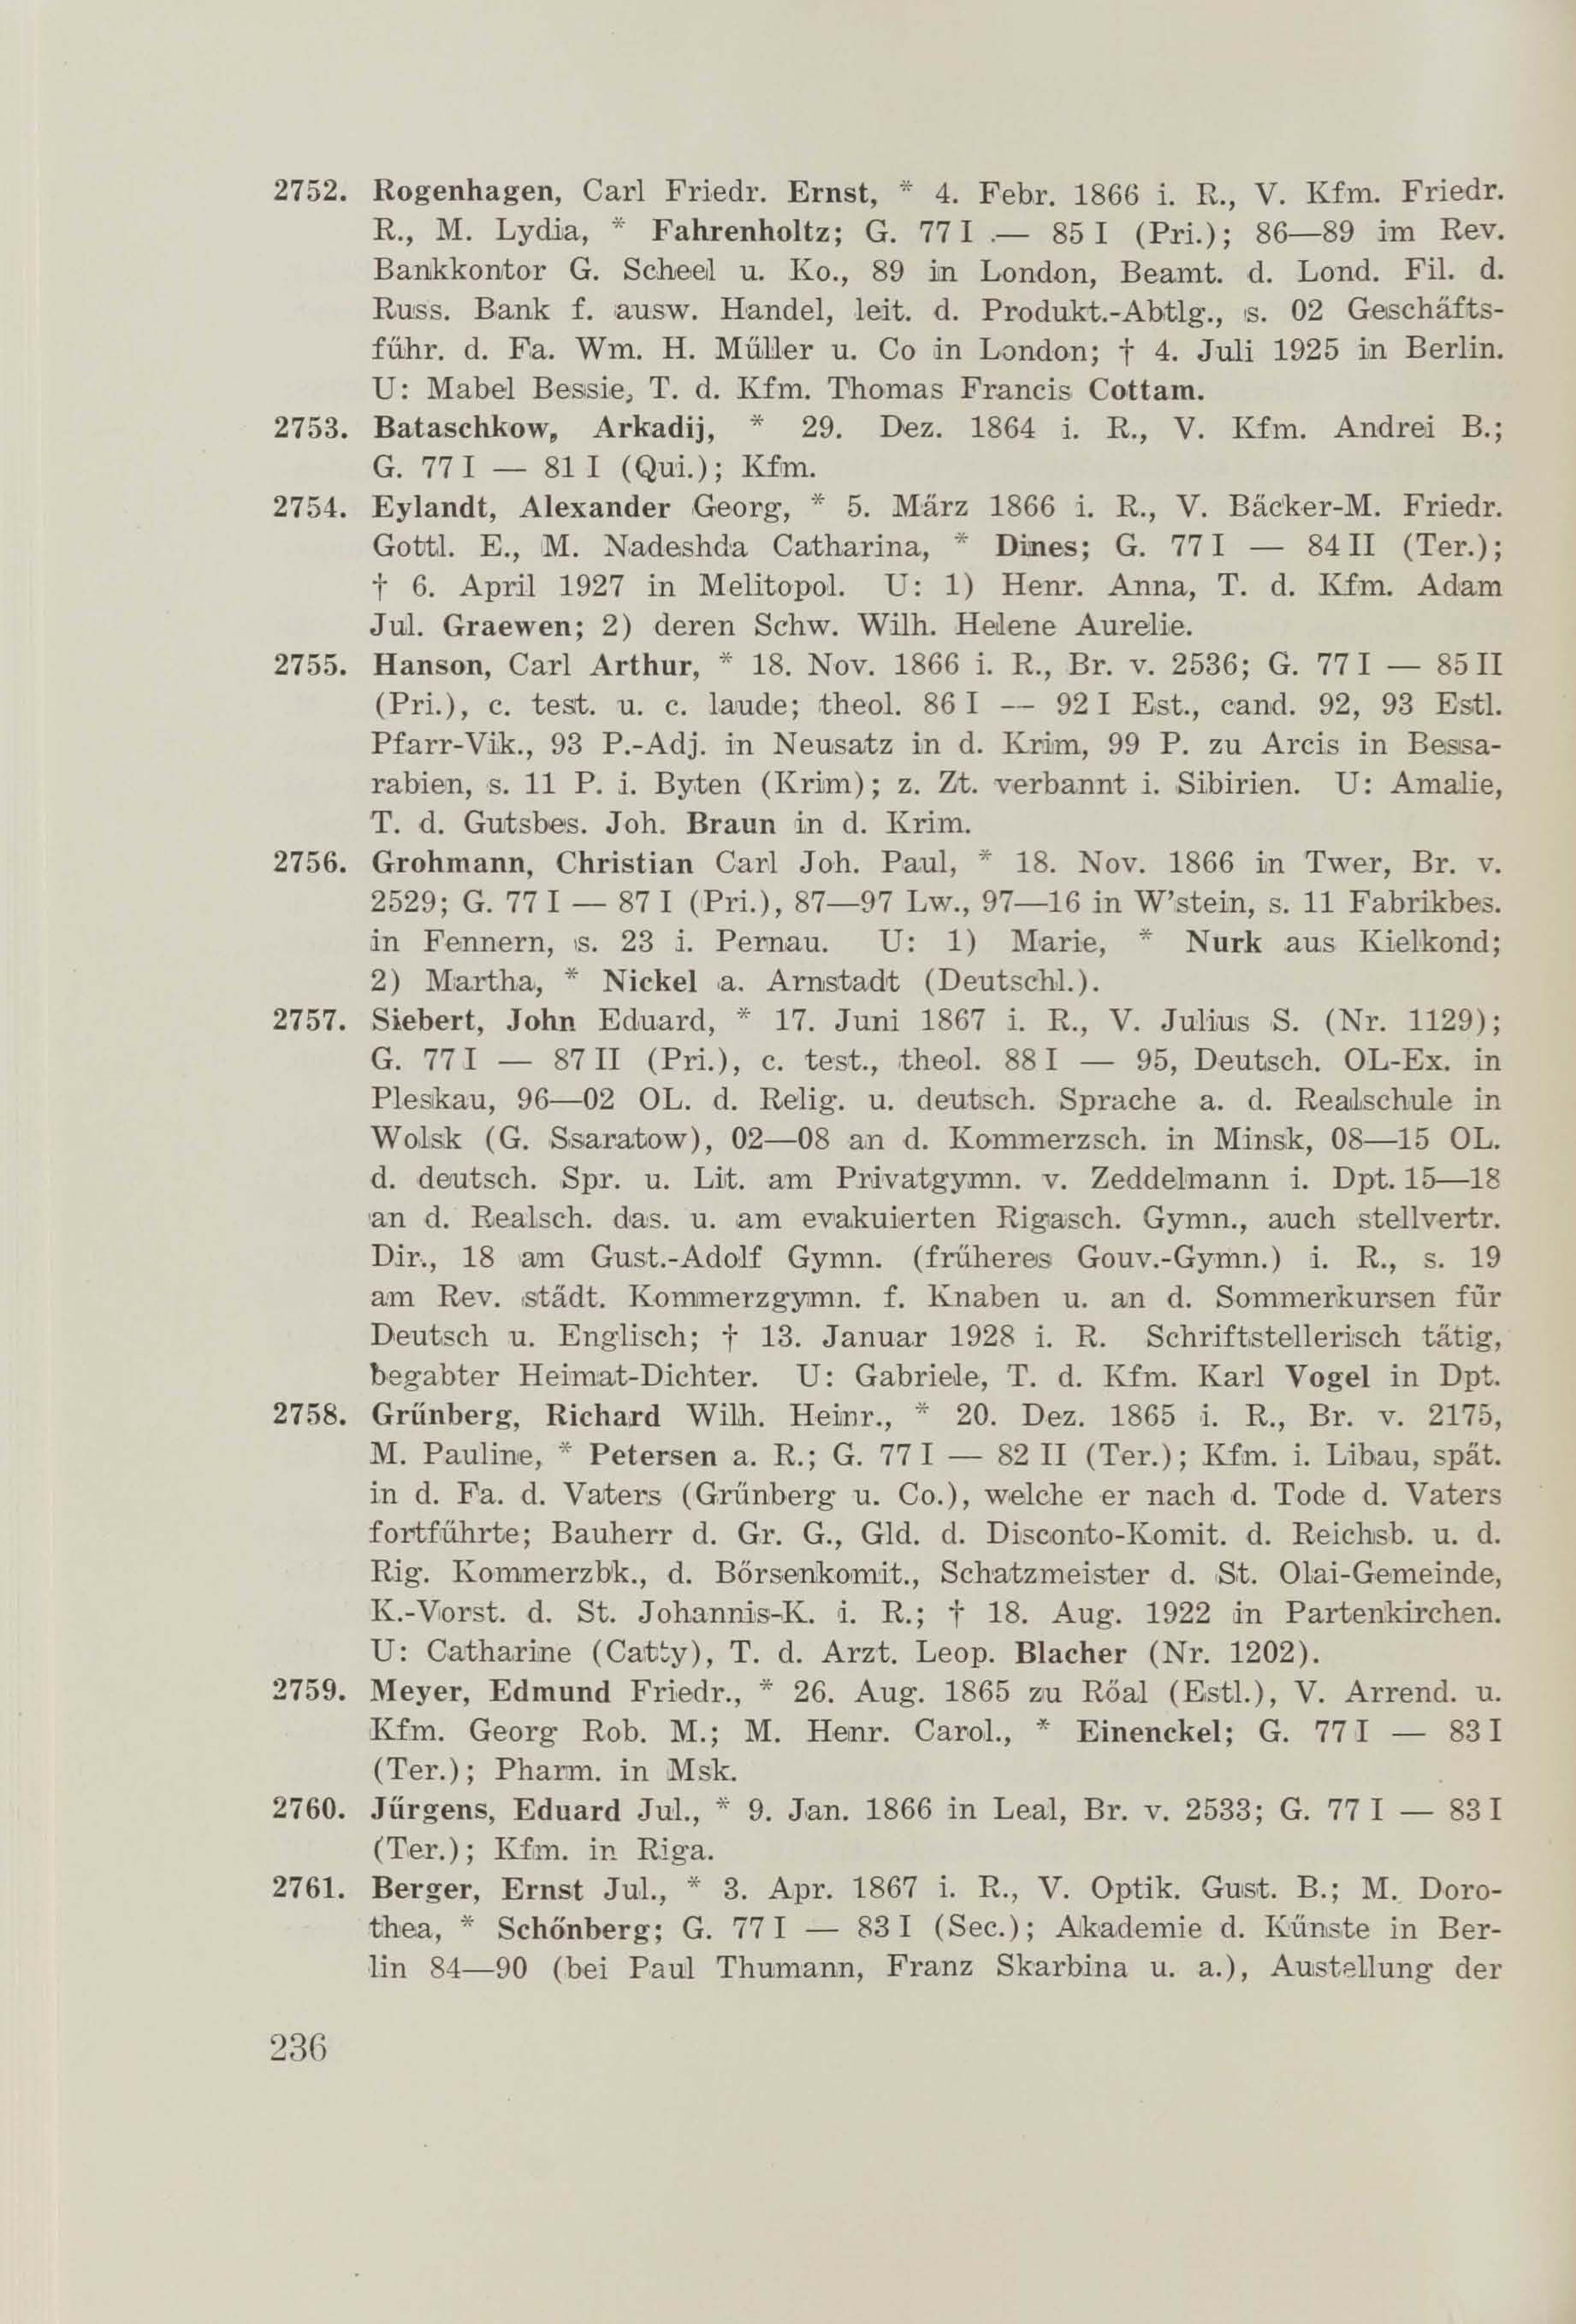 Schüler-Verzeichnis des Revalschen Gouvernements-Gymnasiums 1805–1890 (1931) | 246. (236) Main body of text